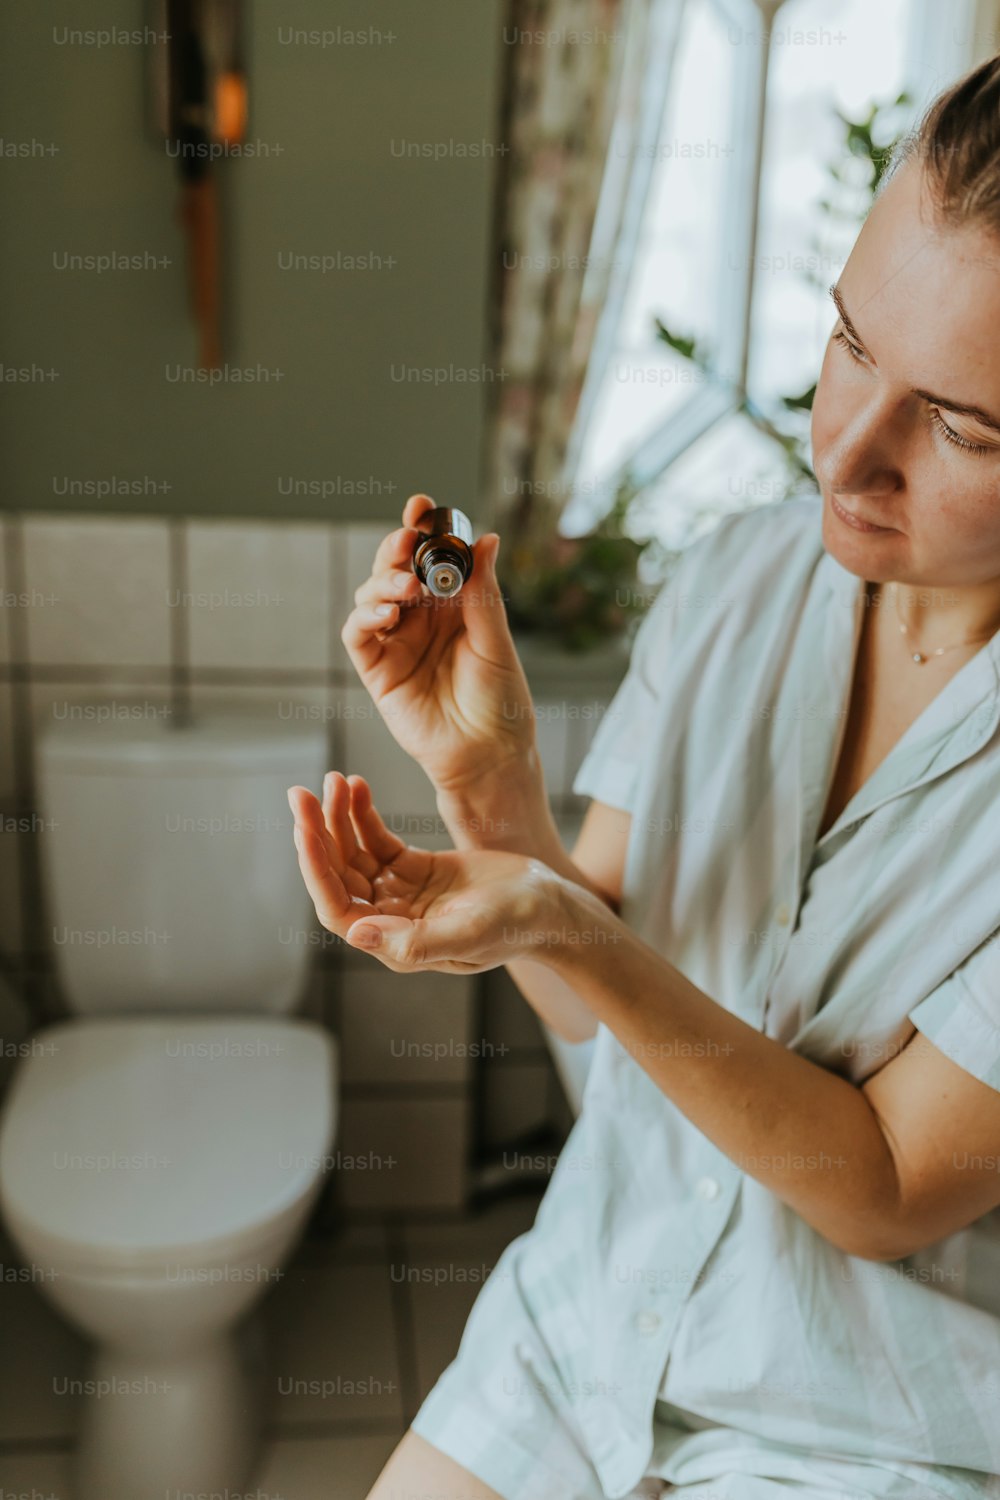 Una mujer sentada en un inodoro sosteniendo un anillo